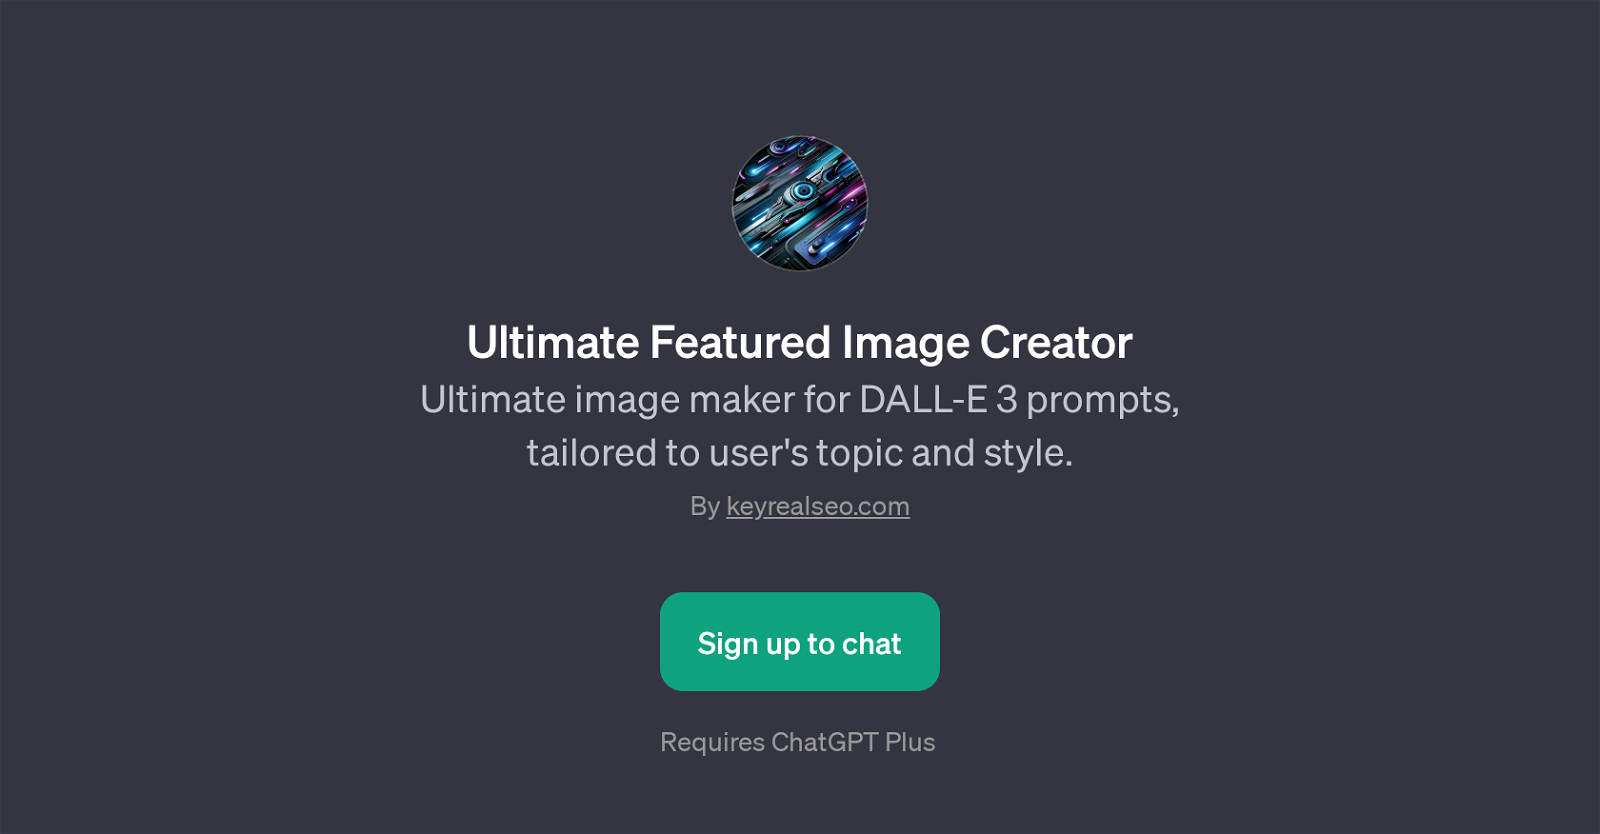 Ultimate Featured Image Creator website